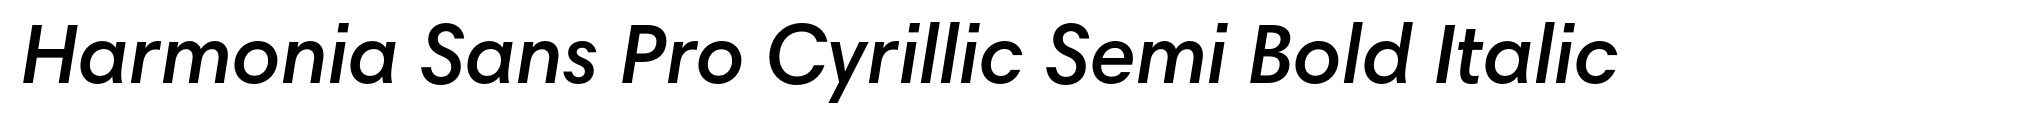 Harmonia Sans Pro Cyrillic Semi Bold Italic image